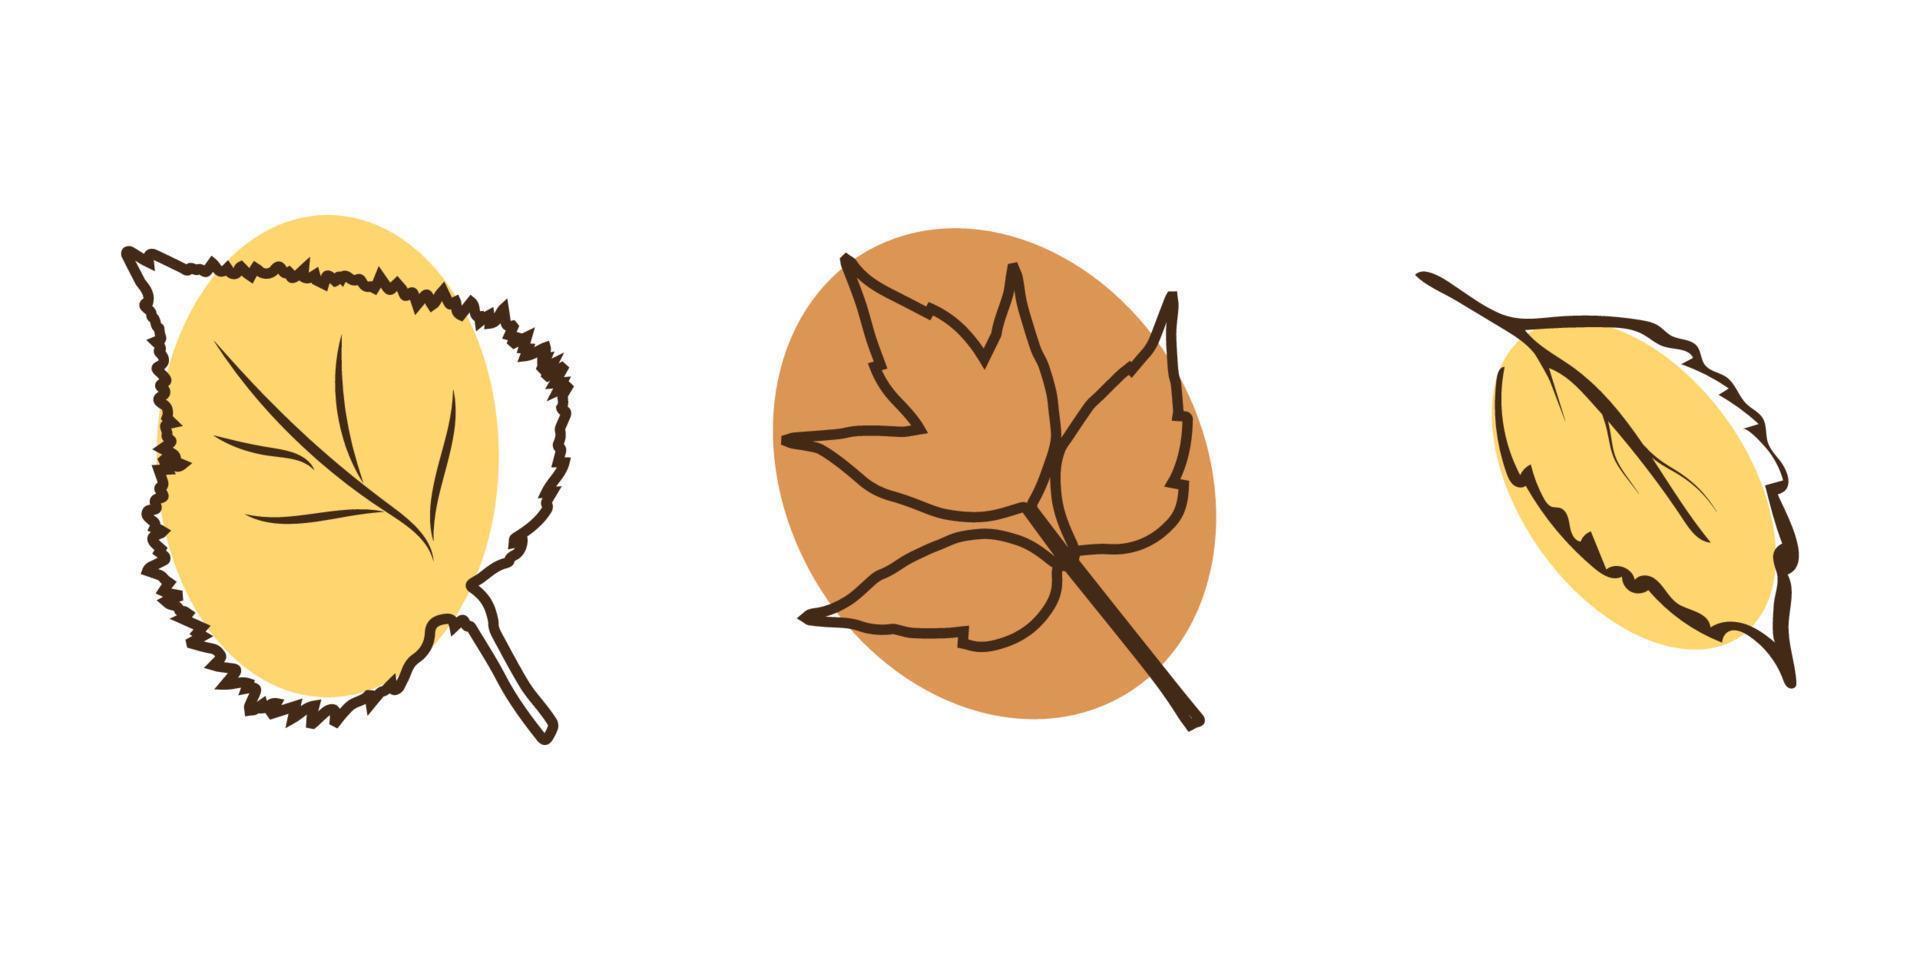 elementos de botánica estilo otoño arte lineal abedul hoja de arce se pueden utilizar para carteles postales vector